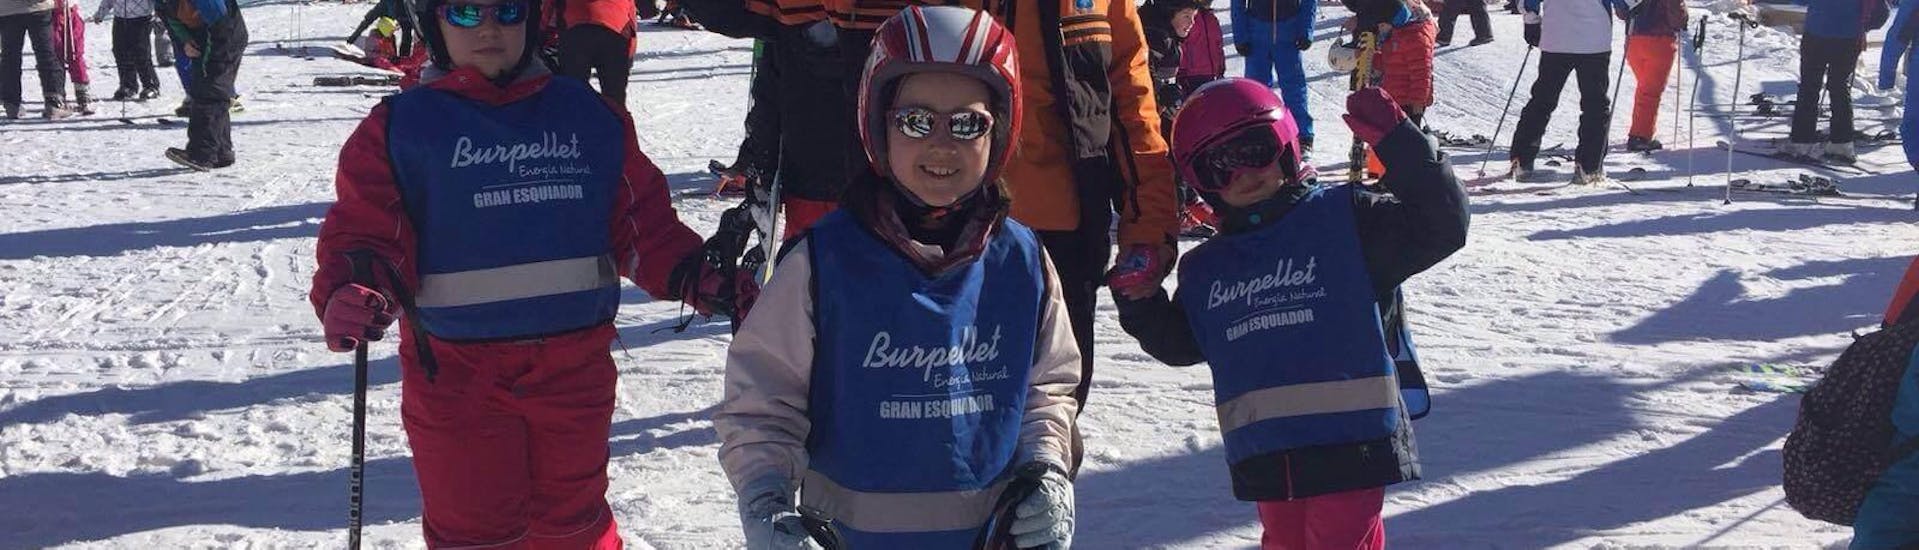 Cours particulier de ski Enfants (3-16 ans) - Tous niveaux.